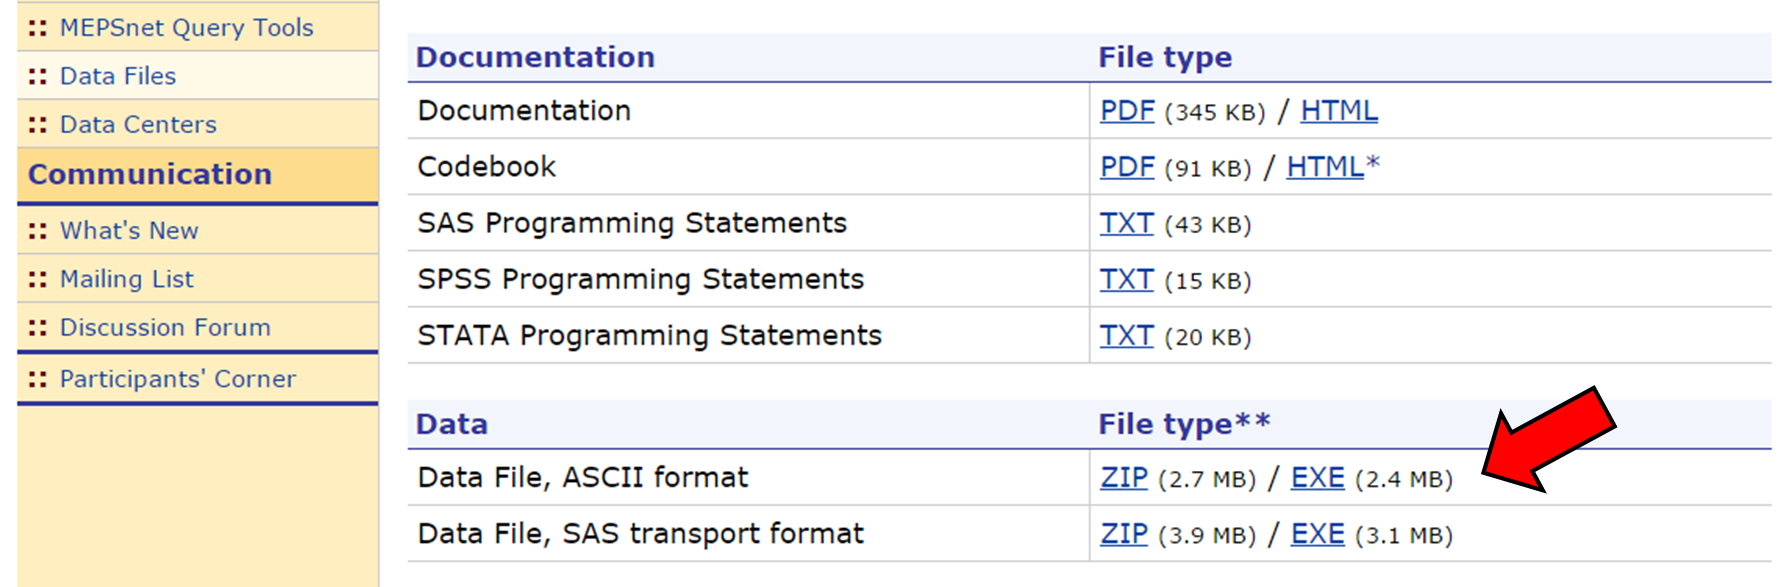 MEPS data files website screenshot